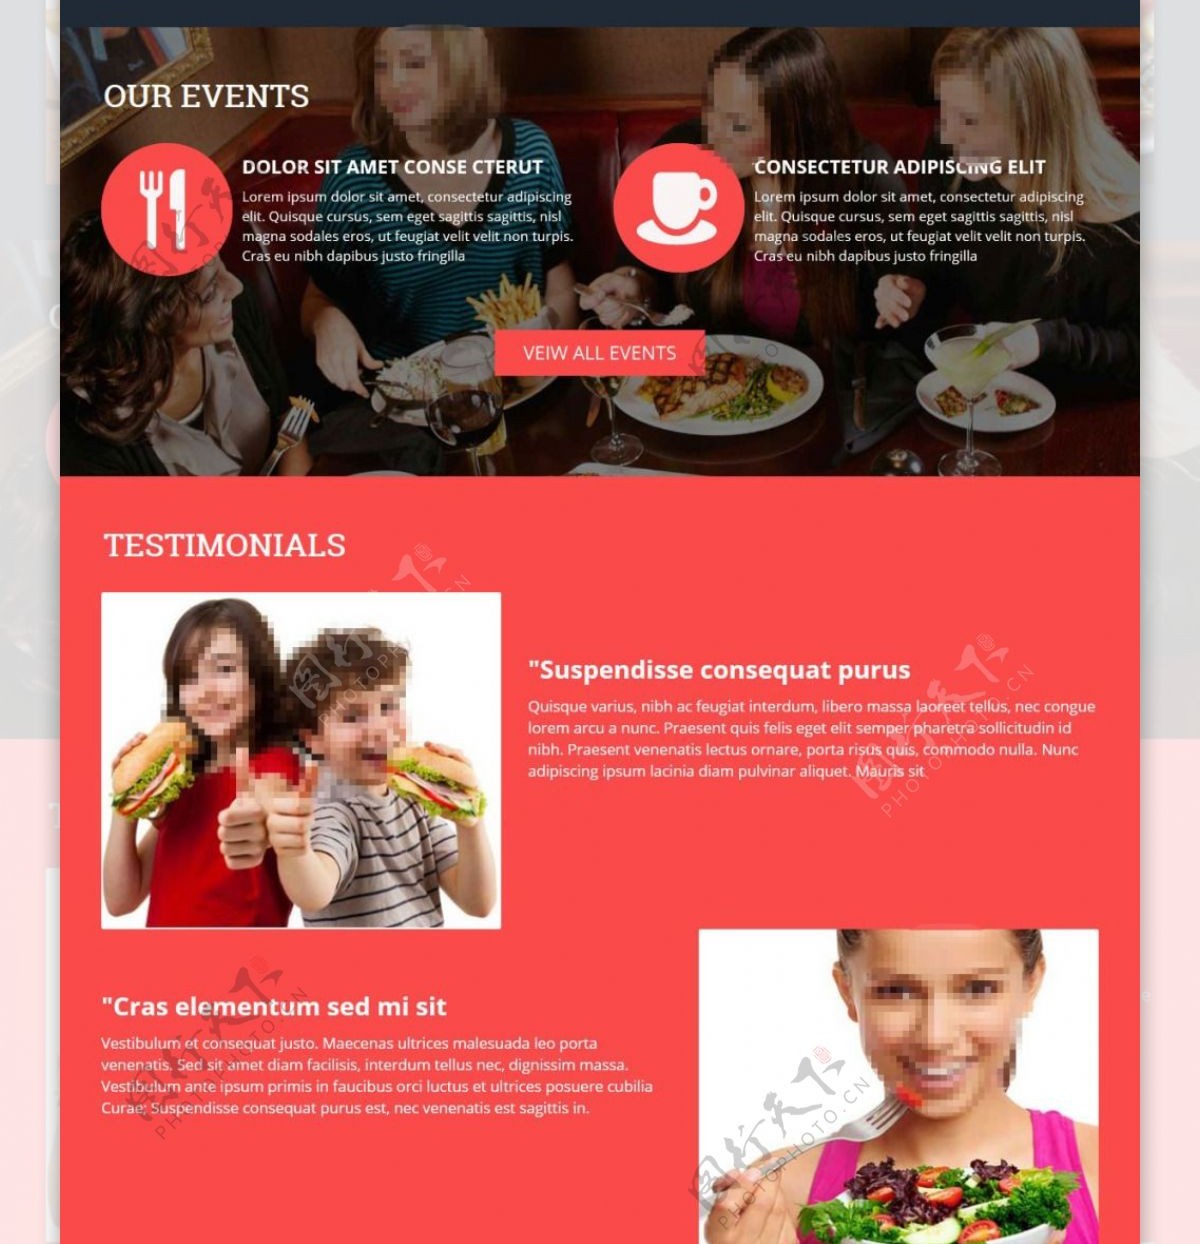 西式快餐餐厅响应式网页模板